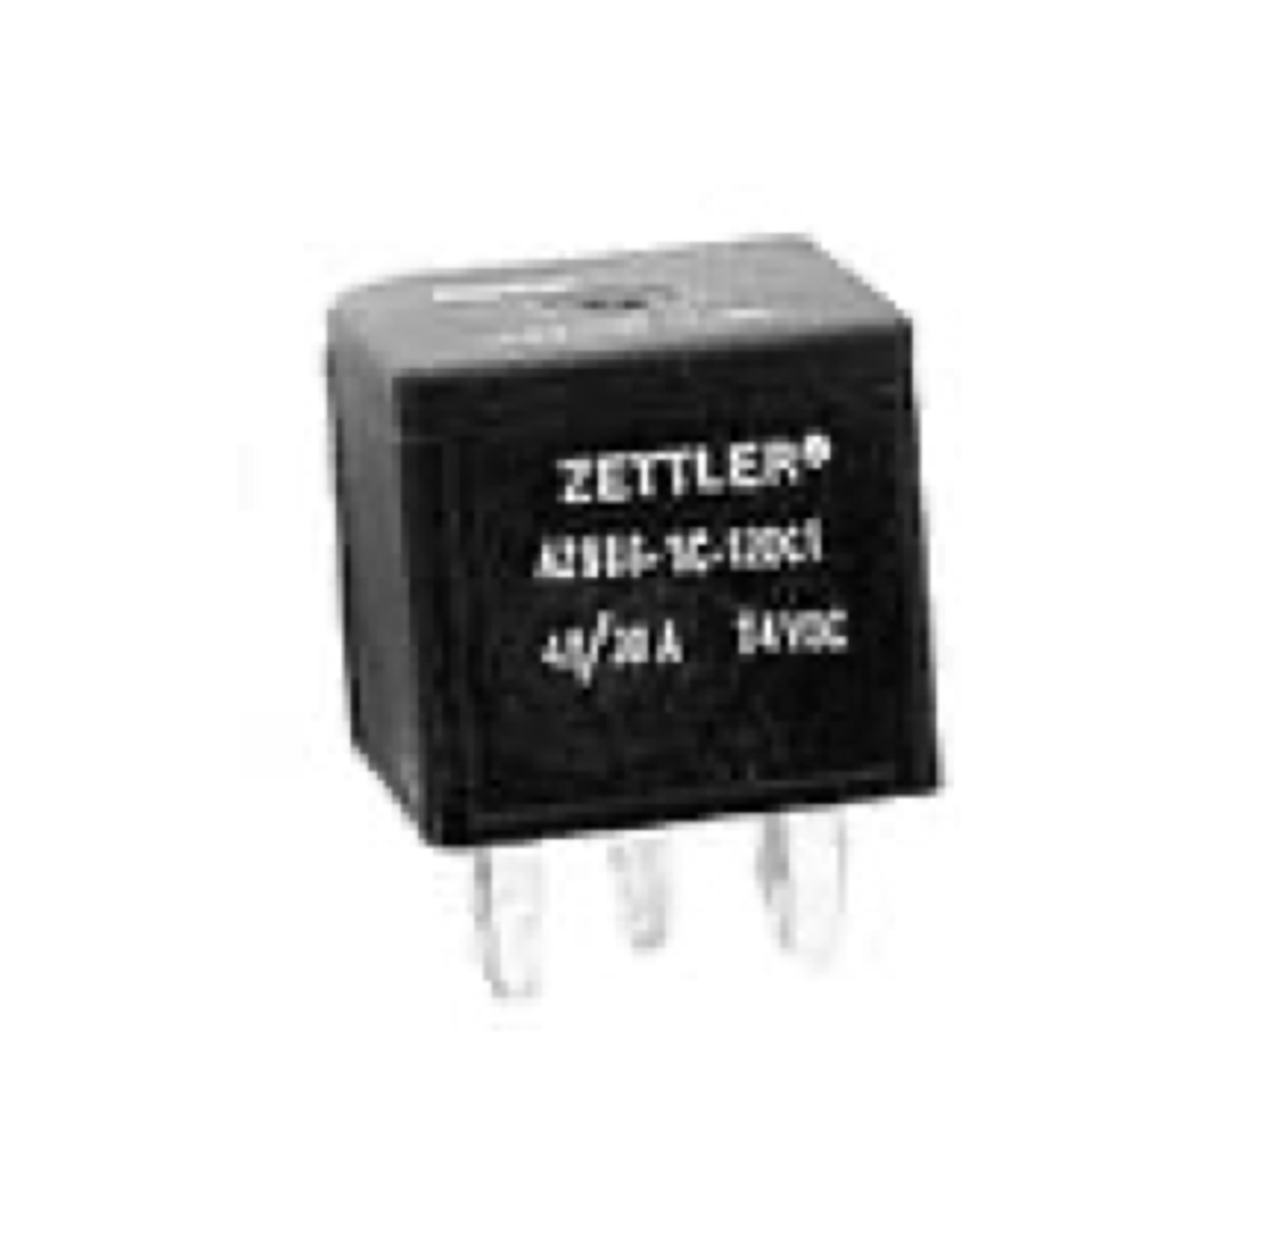 American Zettler AZ9861-1C-12DC1R1 Automotive Relay